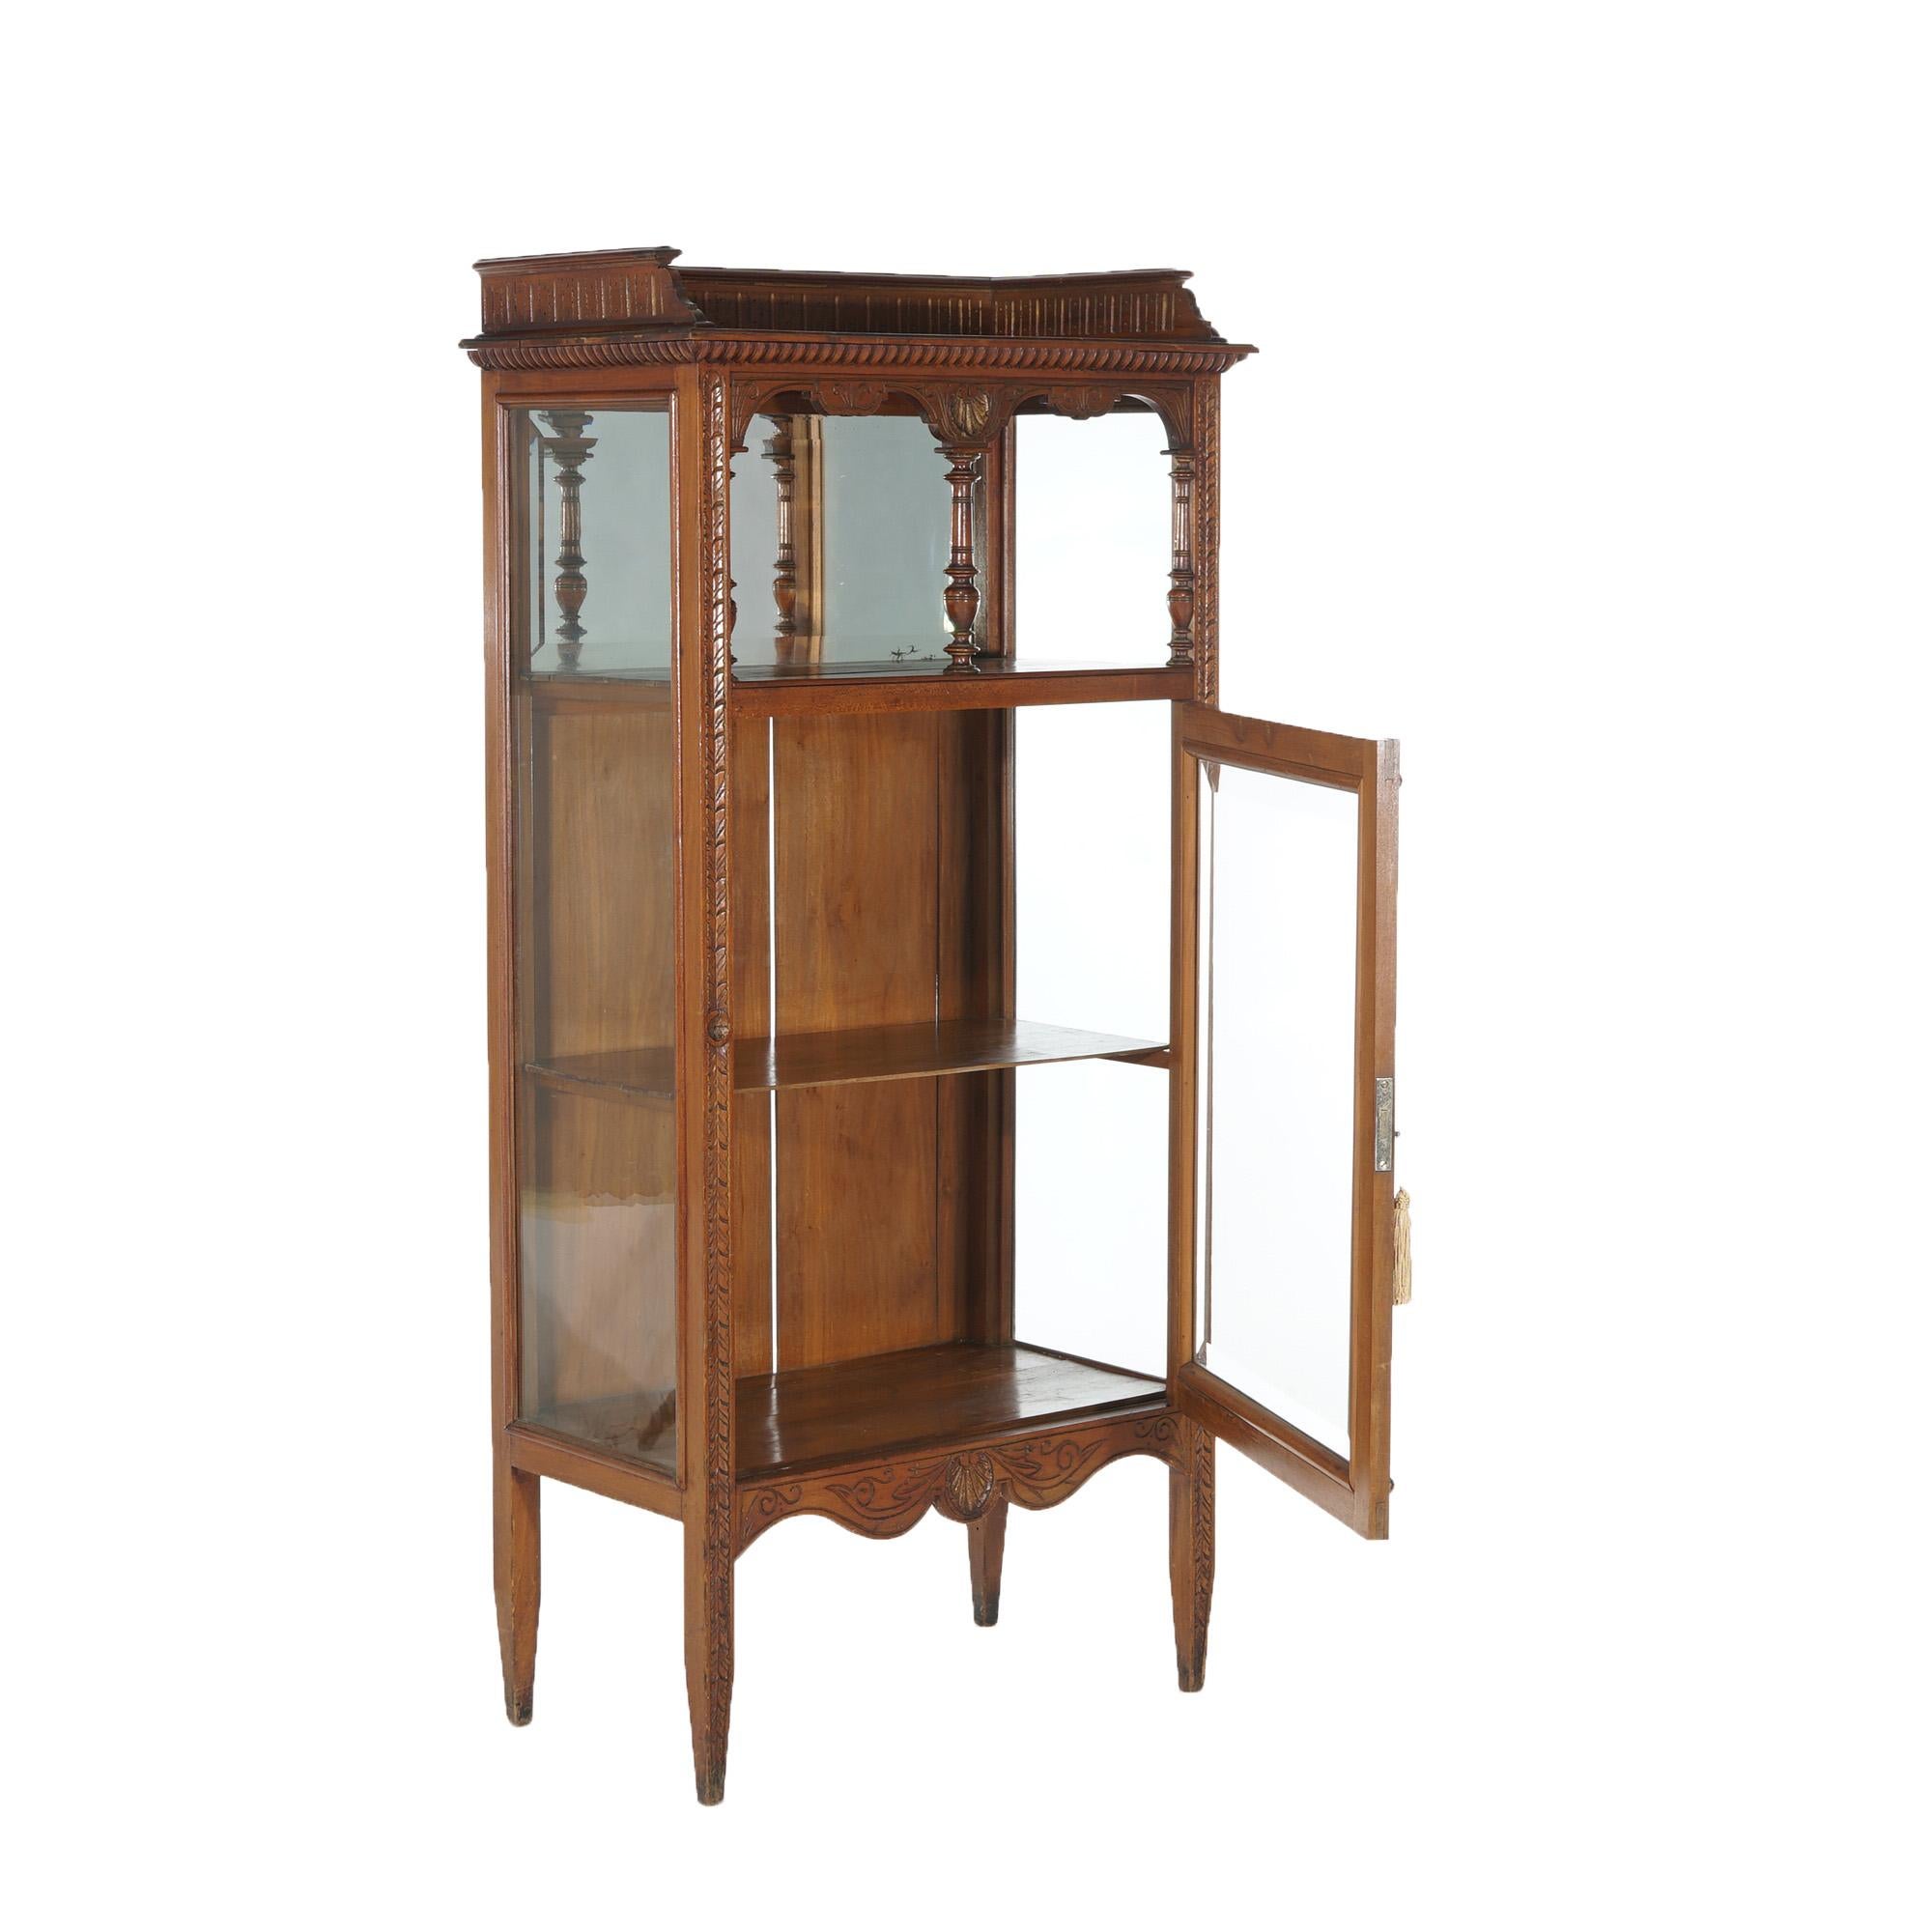 Antike Eastlake viktorianischen Mahagoni Einzeltür & gespiegelt Curio Cabinet mit eingeschnittenen Dekoration C1900

Maße - 59'H x 26,5 